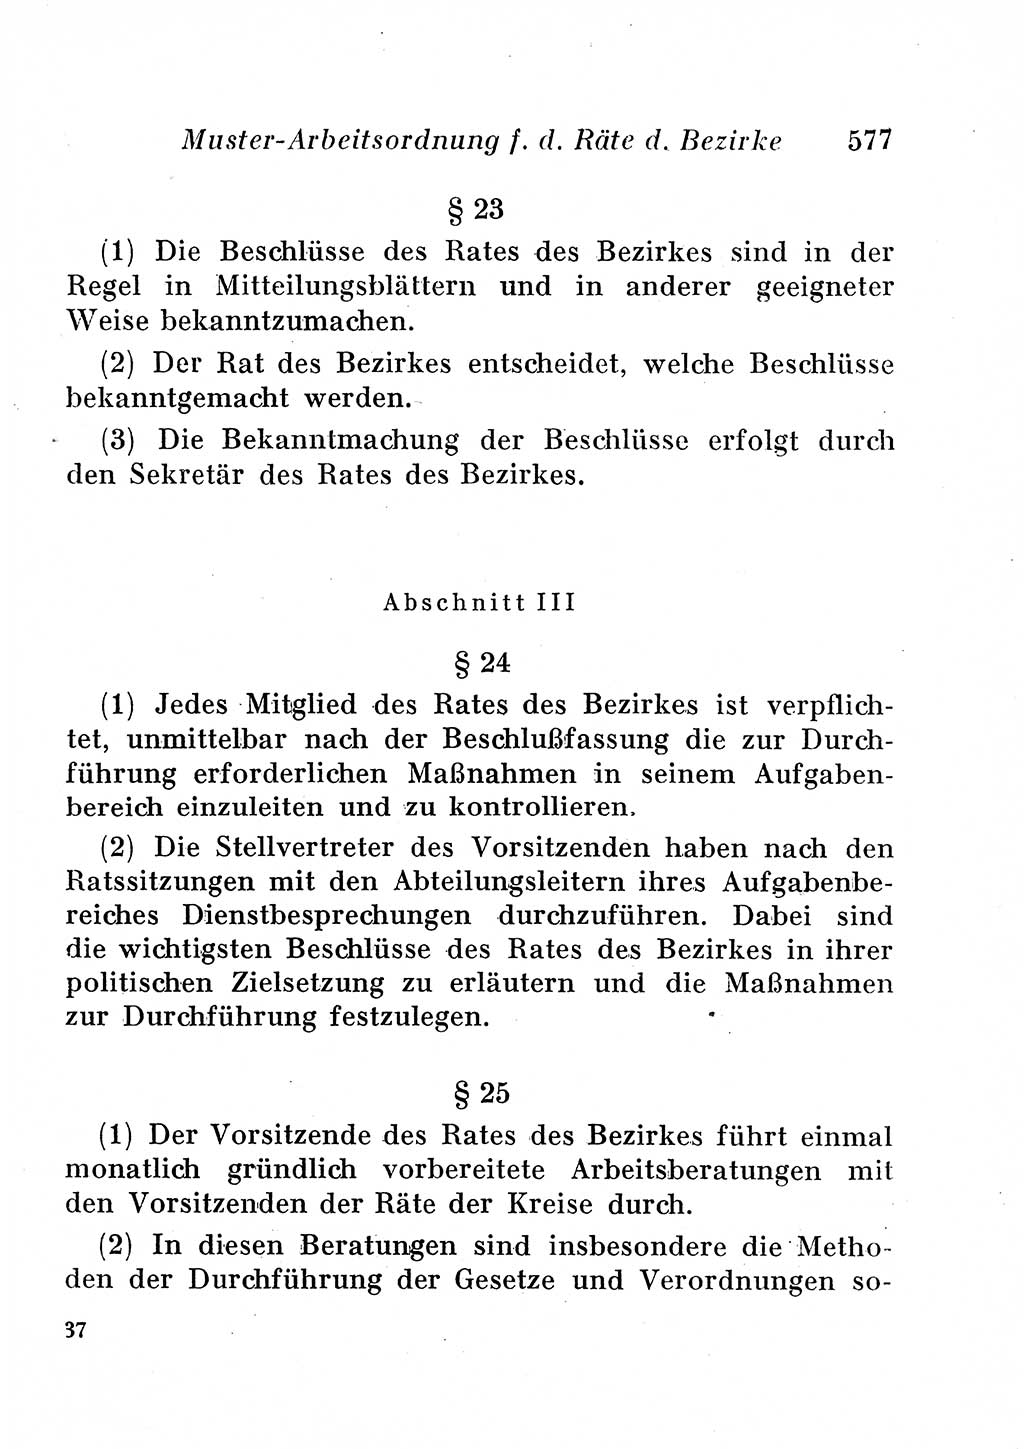 Staats- und verwaltungsrechtliche Gesetze der Deutschen Demokratischen Republik (DDR) 1958, Seite 577 (StVerwR Ges. DDR 1958, S. 577)